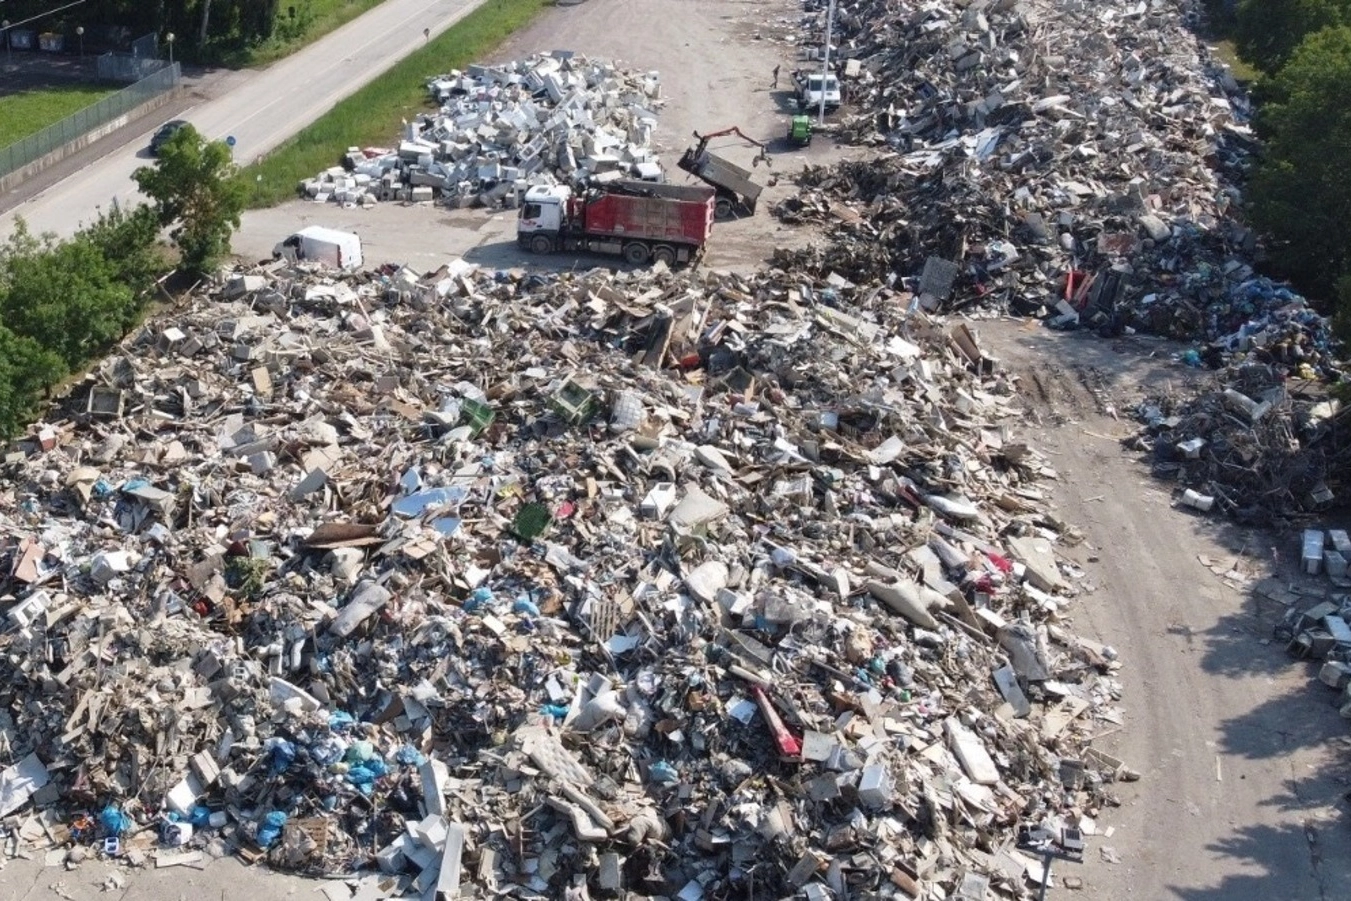 La montagna dei rifiuti vista dal drone  a Faenza